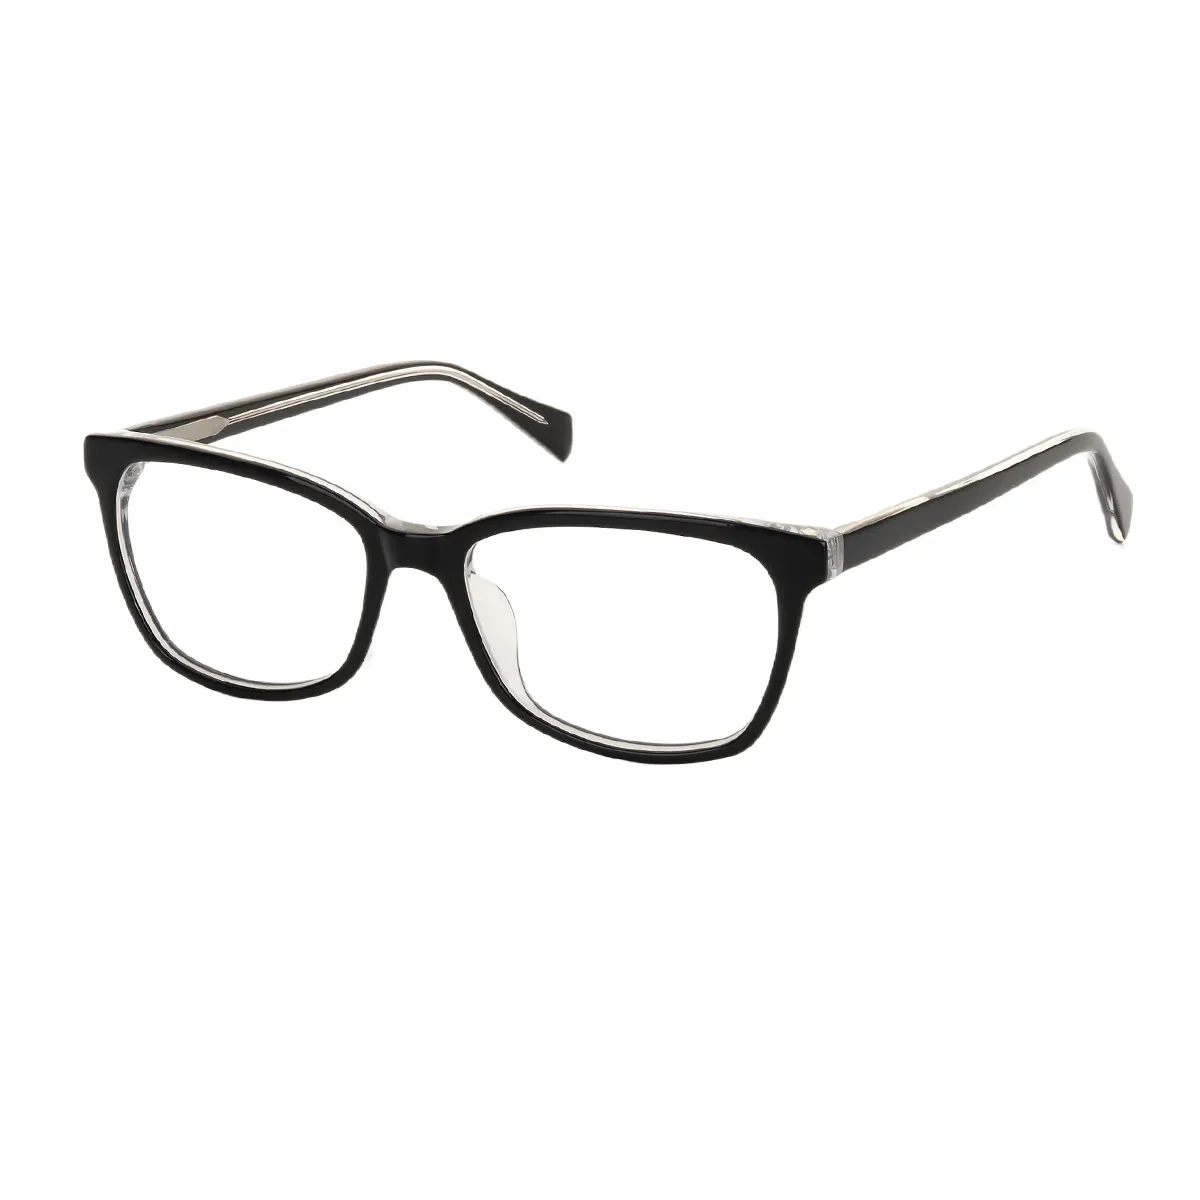 Buke - Square Black Glasses for Men & Women - EFE